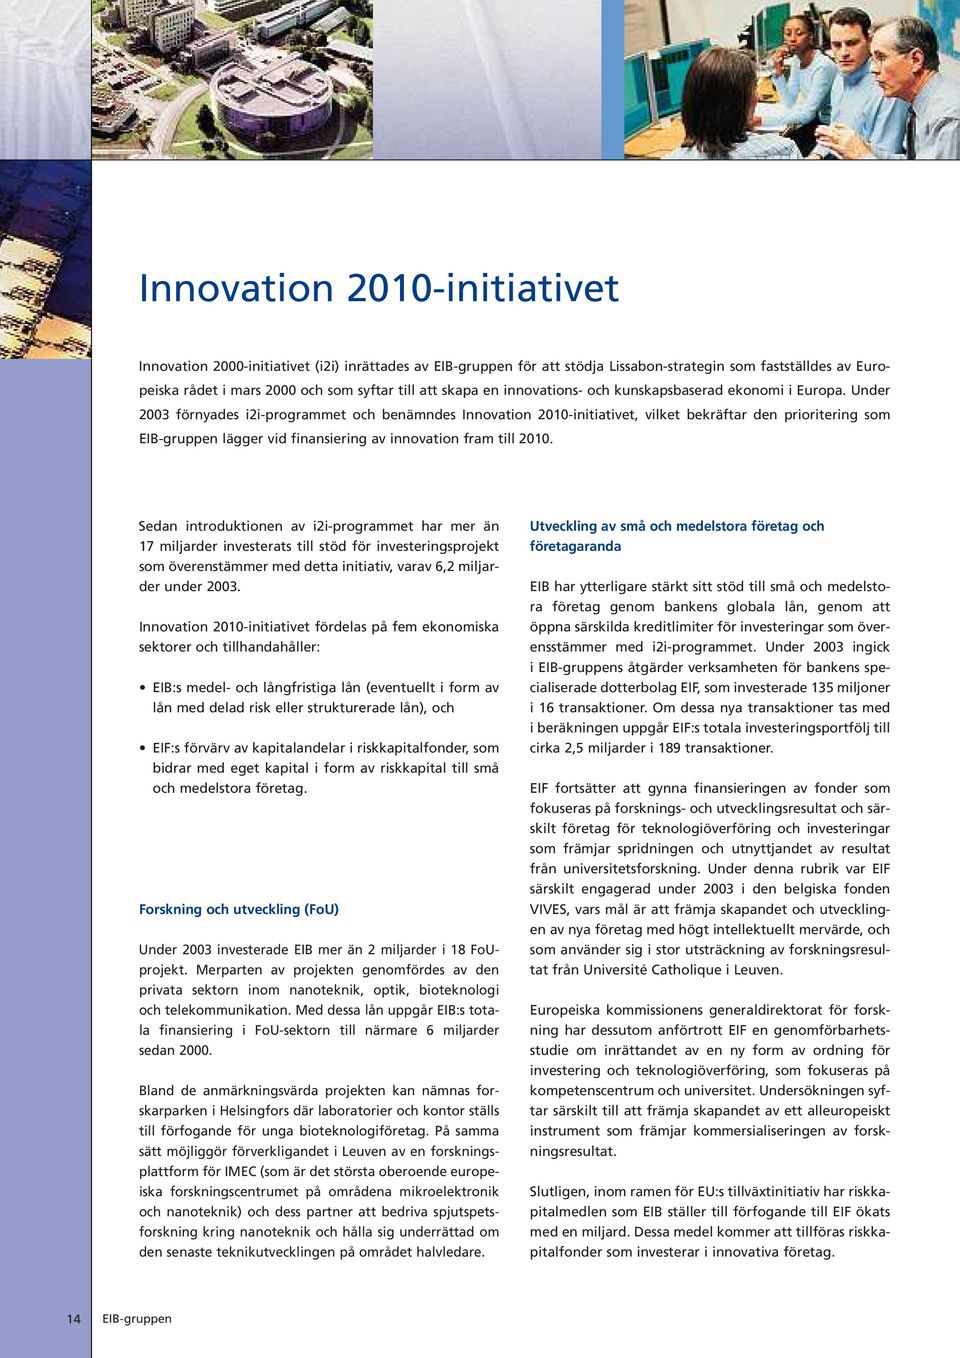 Under 2003 fö rnyades i2i-programmet och benä mndes Innovation 2010-initiativet, vilket bekrä ftar den prioritering som EIB-gruppen lä gger vid finansiering av innovation fram till 2010.